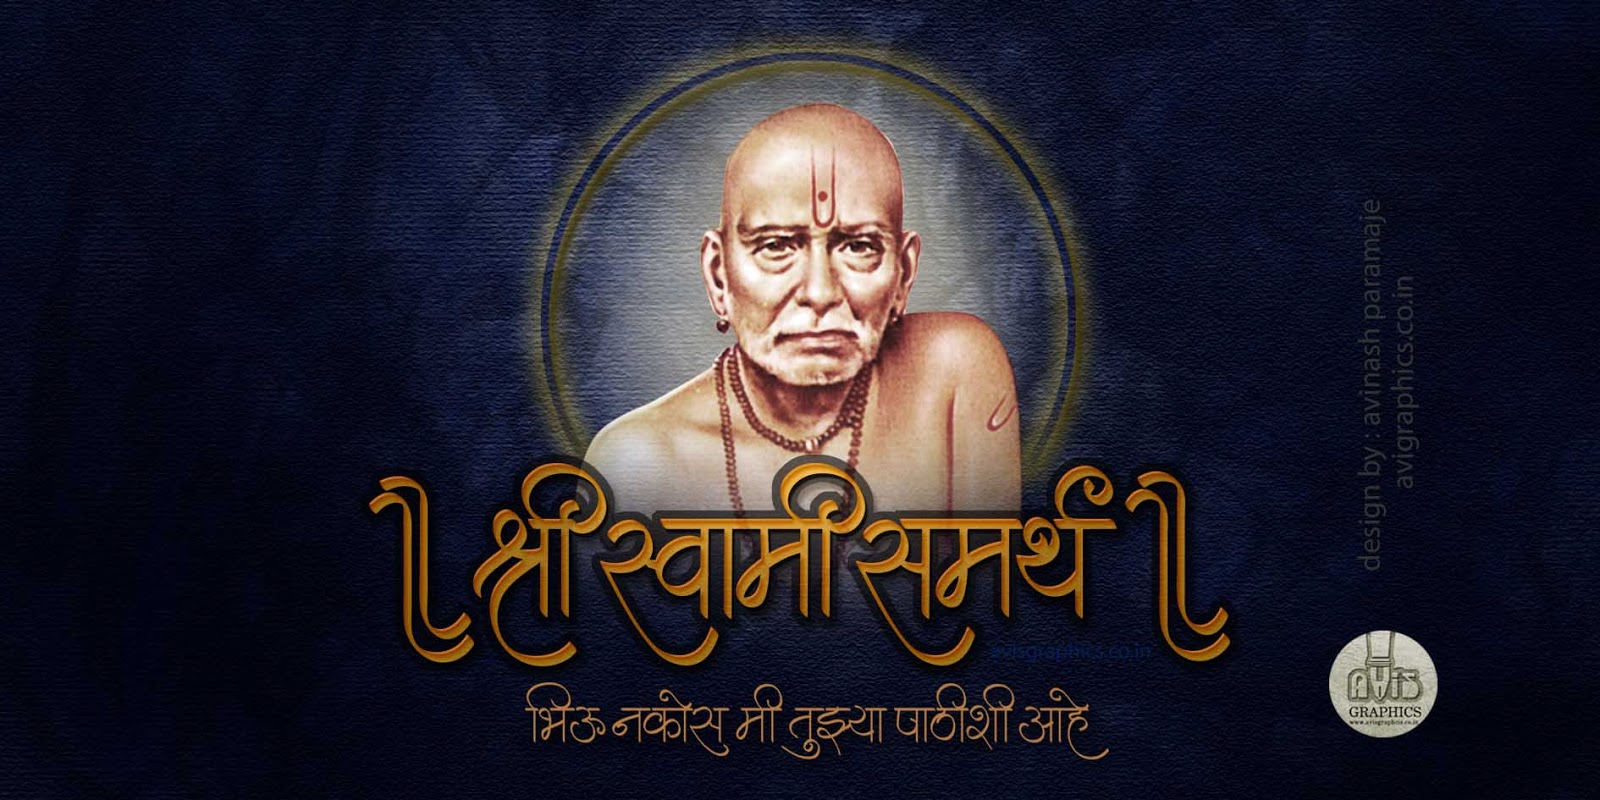 swami samarth tapete,text,schriftart,bildunterschrift,album cover,guru